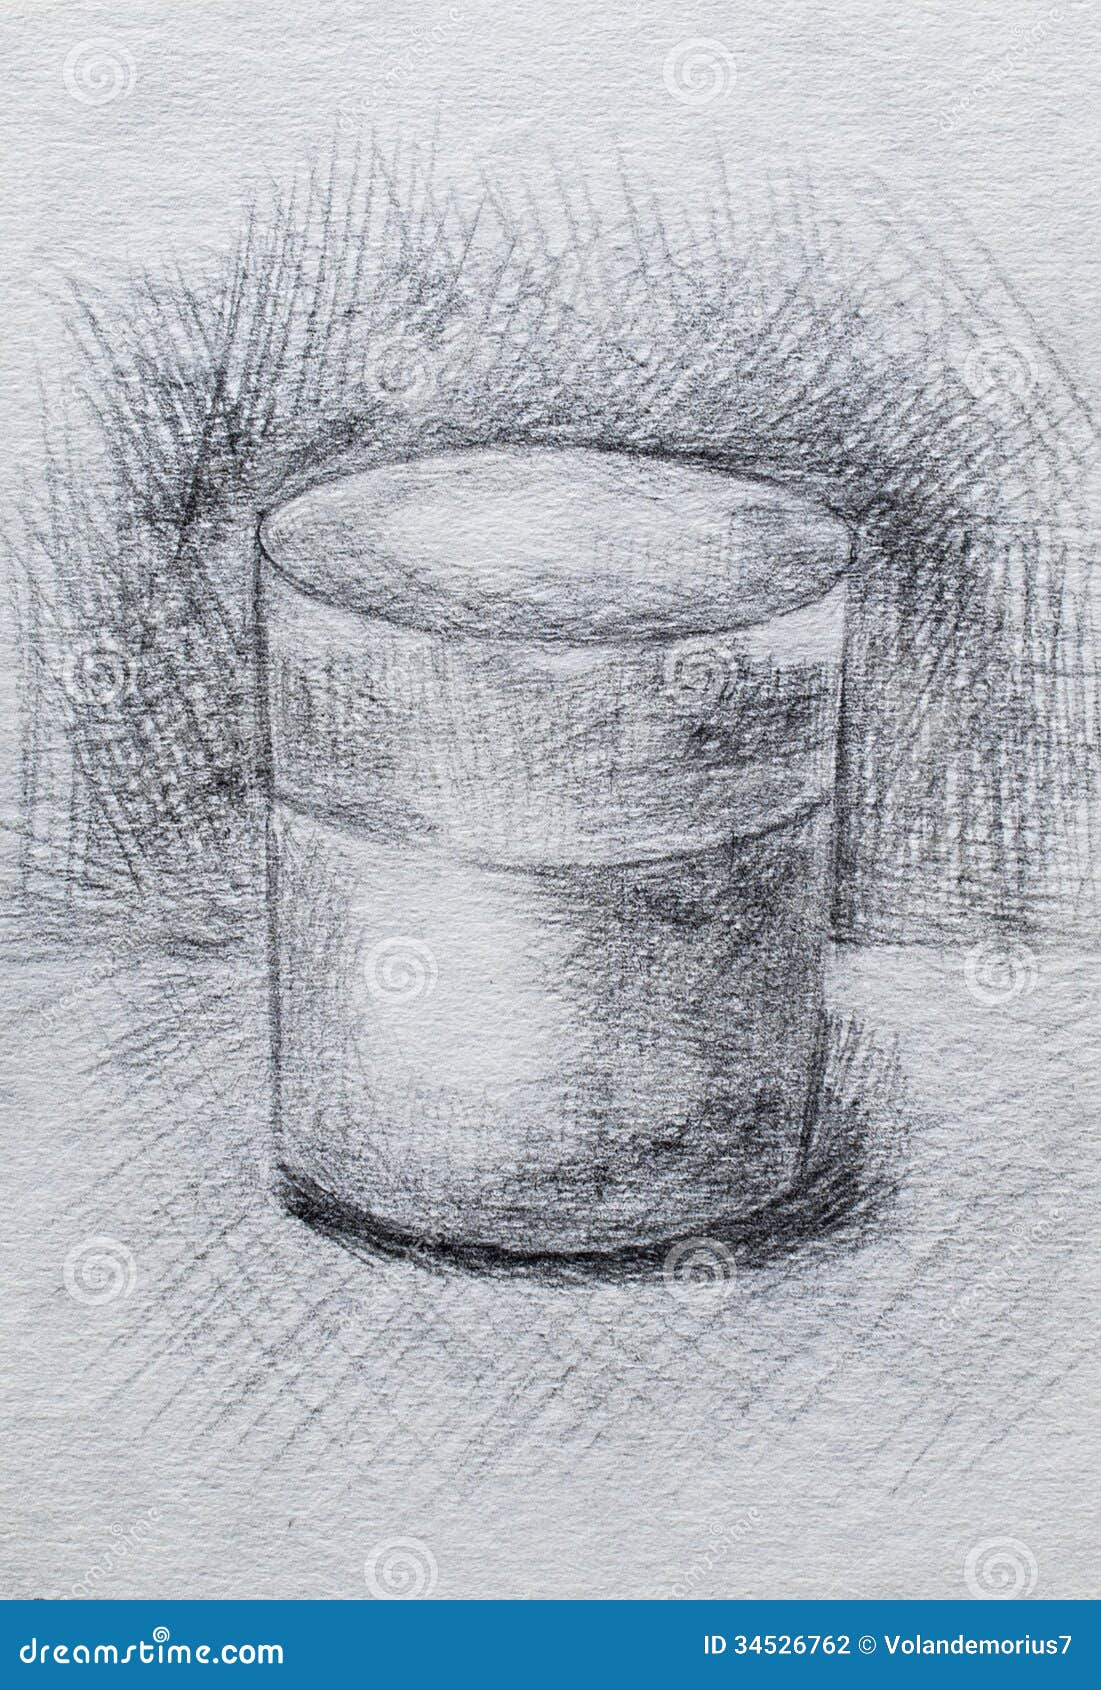 Disegno A Matita Di Un Bicchiere Dacqua Illustrazione Di